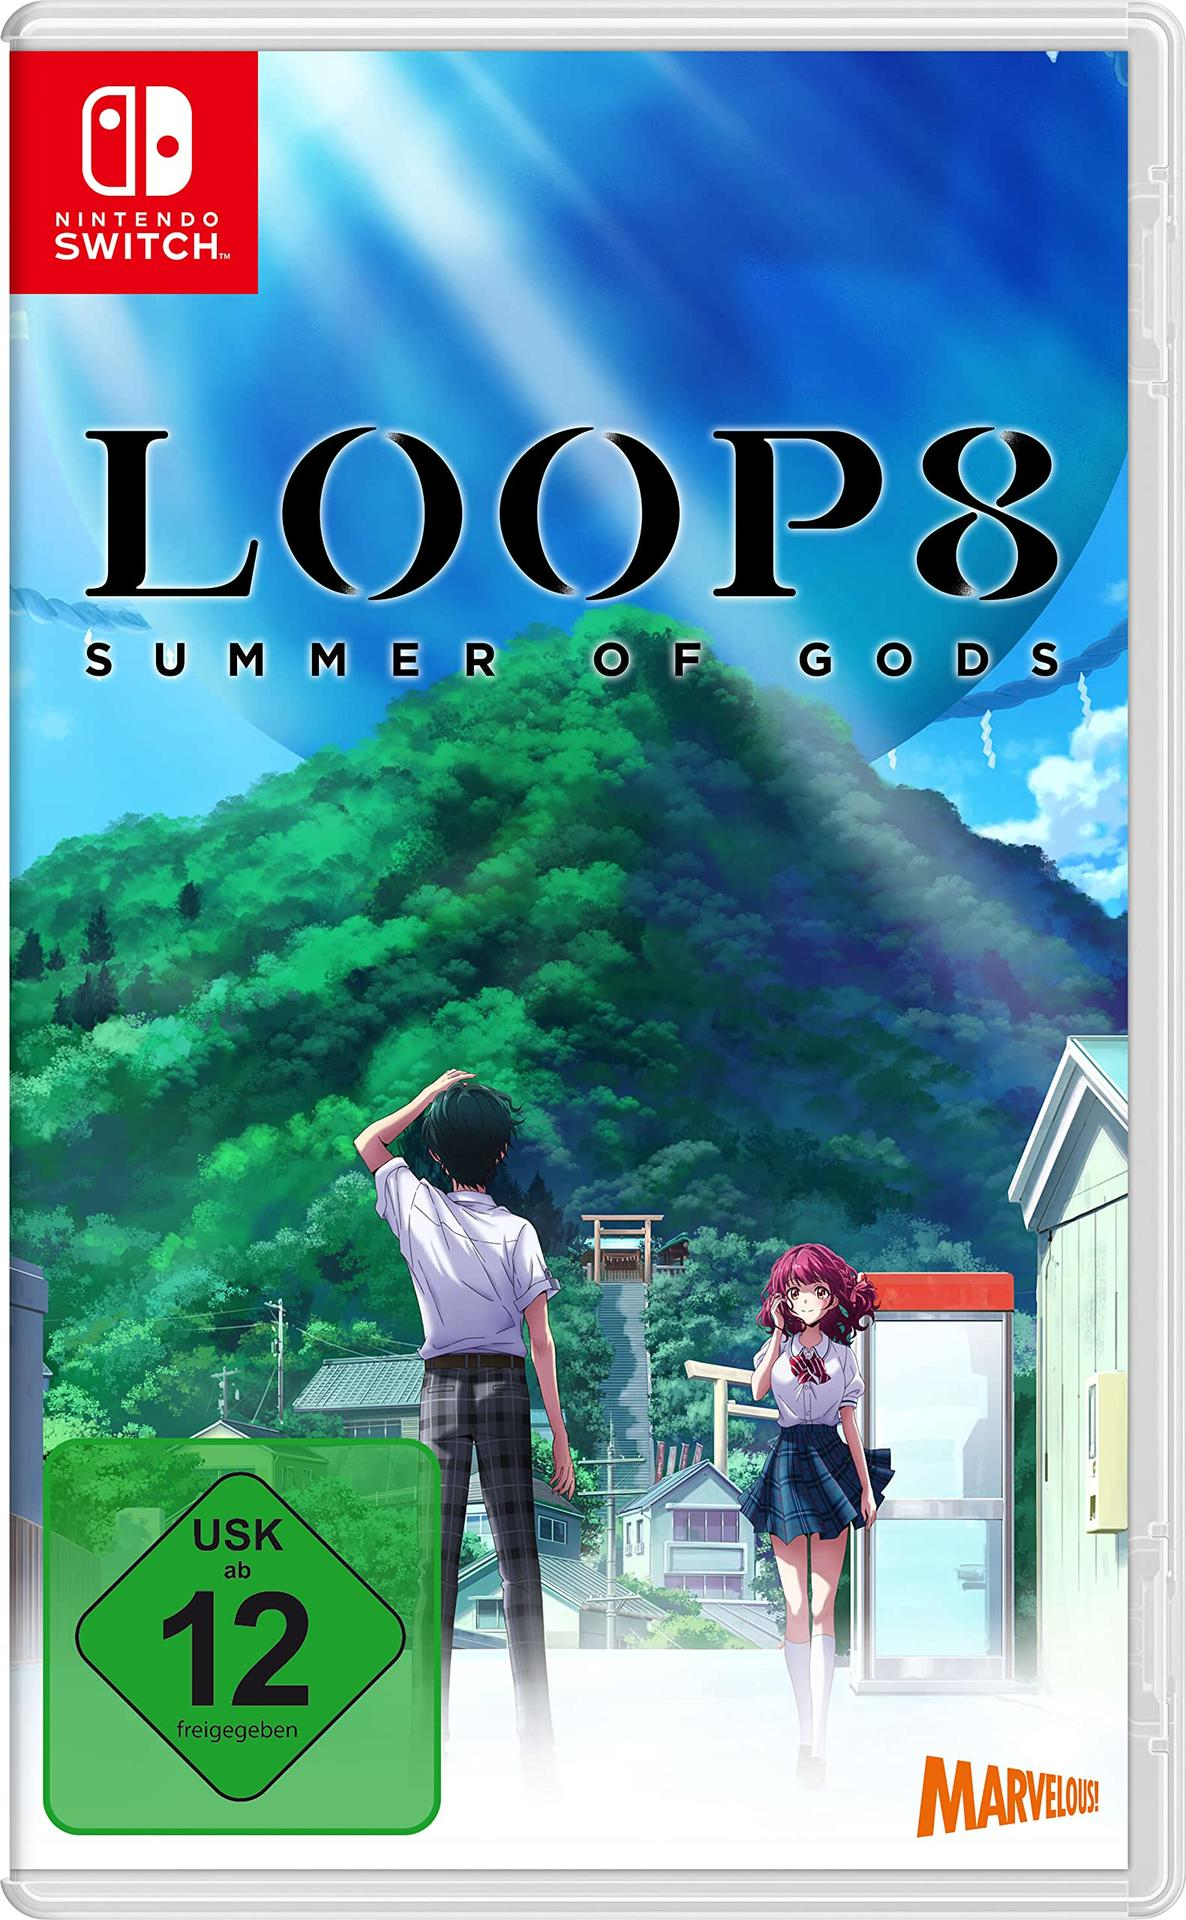 [Nintendo Gods Summer Switch] - of Loop8: